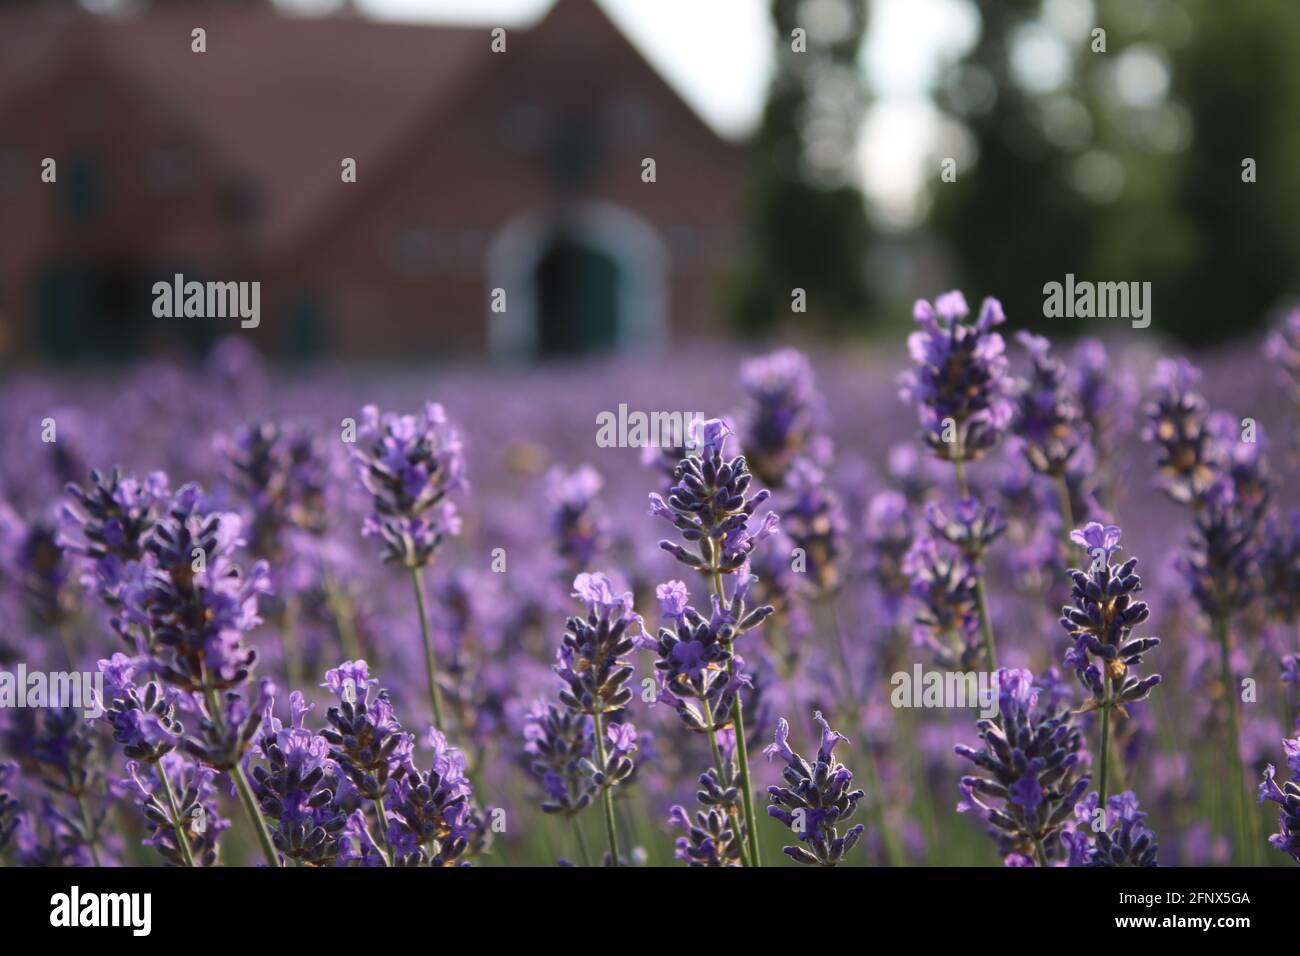 Lavendel vor einem Bauernhof nahe Meppen/ Emsland/ Lavender in front of an old farmhouse in Germany Stock Photo